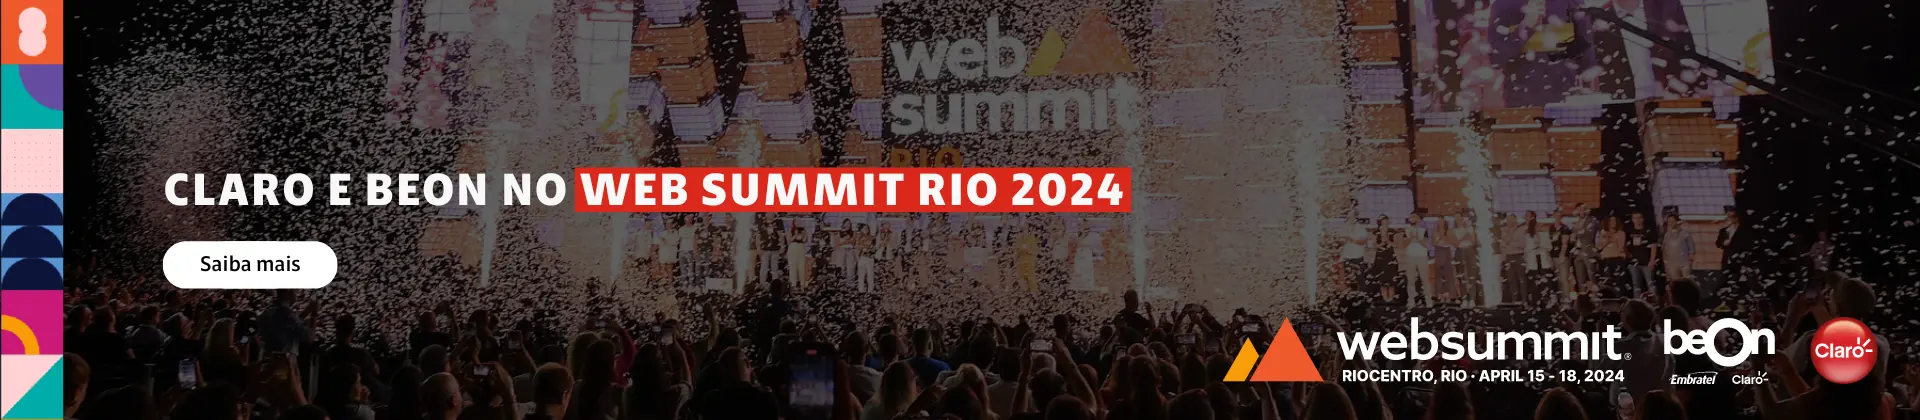 claro e beon no web summit rio 2024